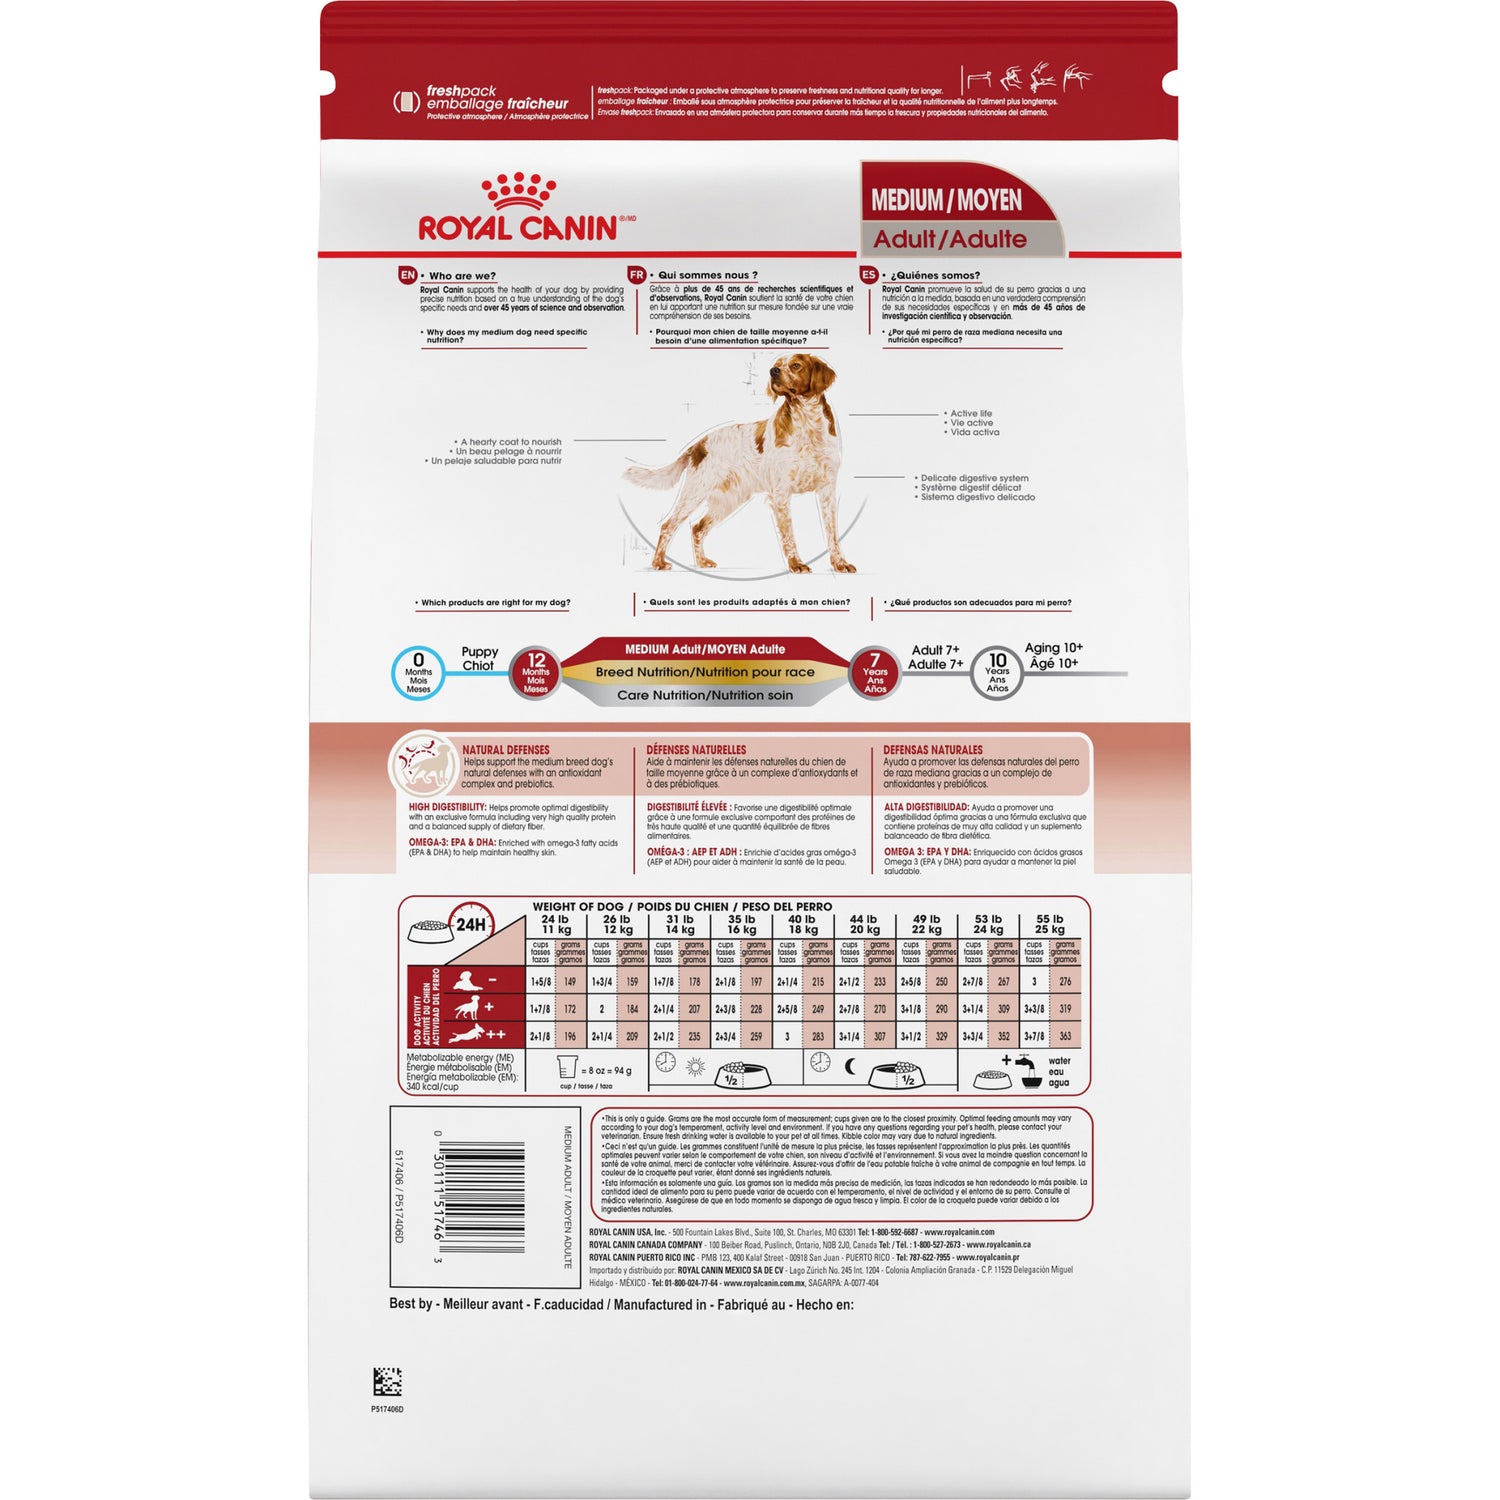 ROYAL CANIN Nutrition Santé et Taille MOYEN ADULTE – nourriture sèche pour chiens